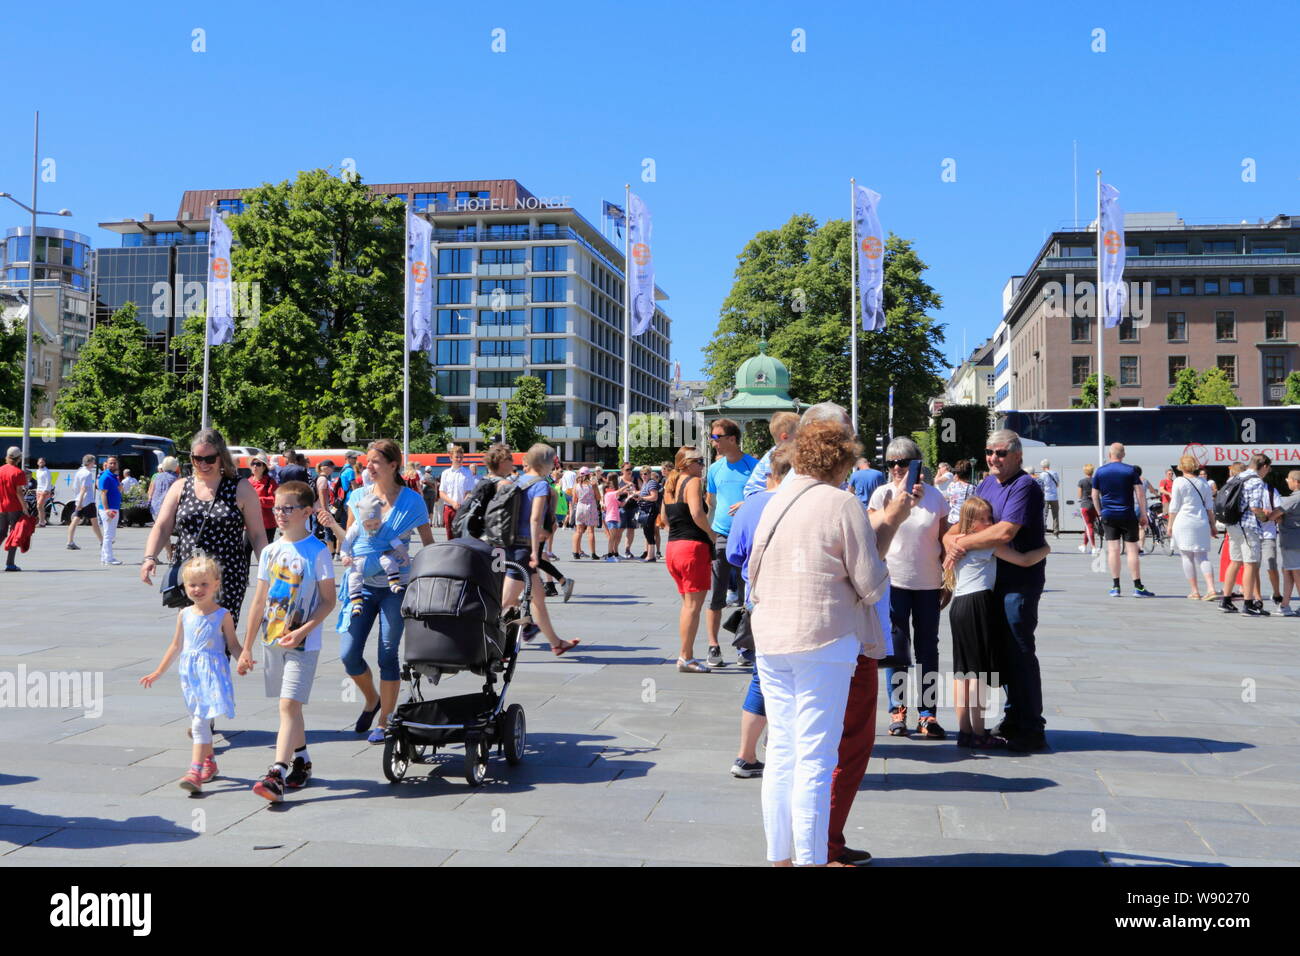 Les gens de la foule place publique, Festplassen, à Bergen, en Norvège, au cours de l'été. Hotel Norge est vu dans l'arrière-plan. Banque D'Images